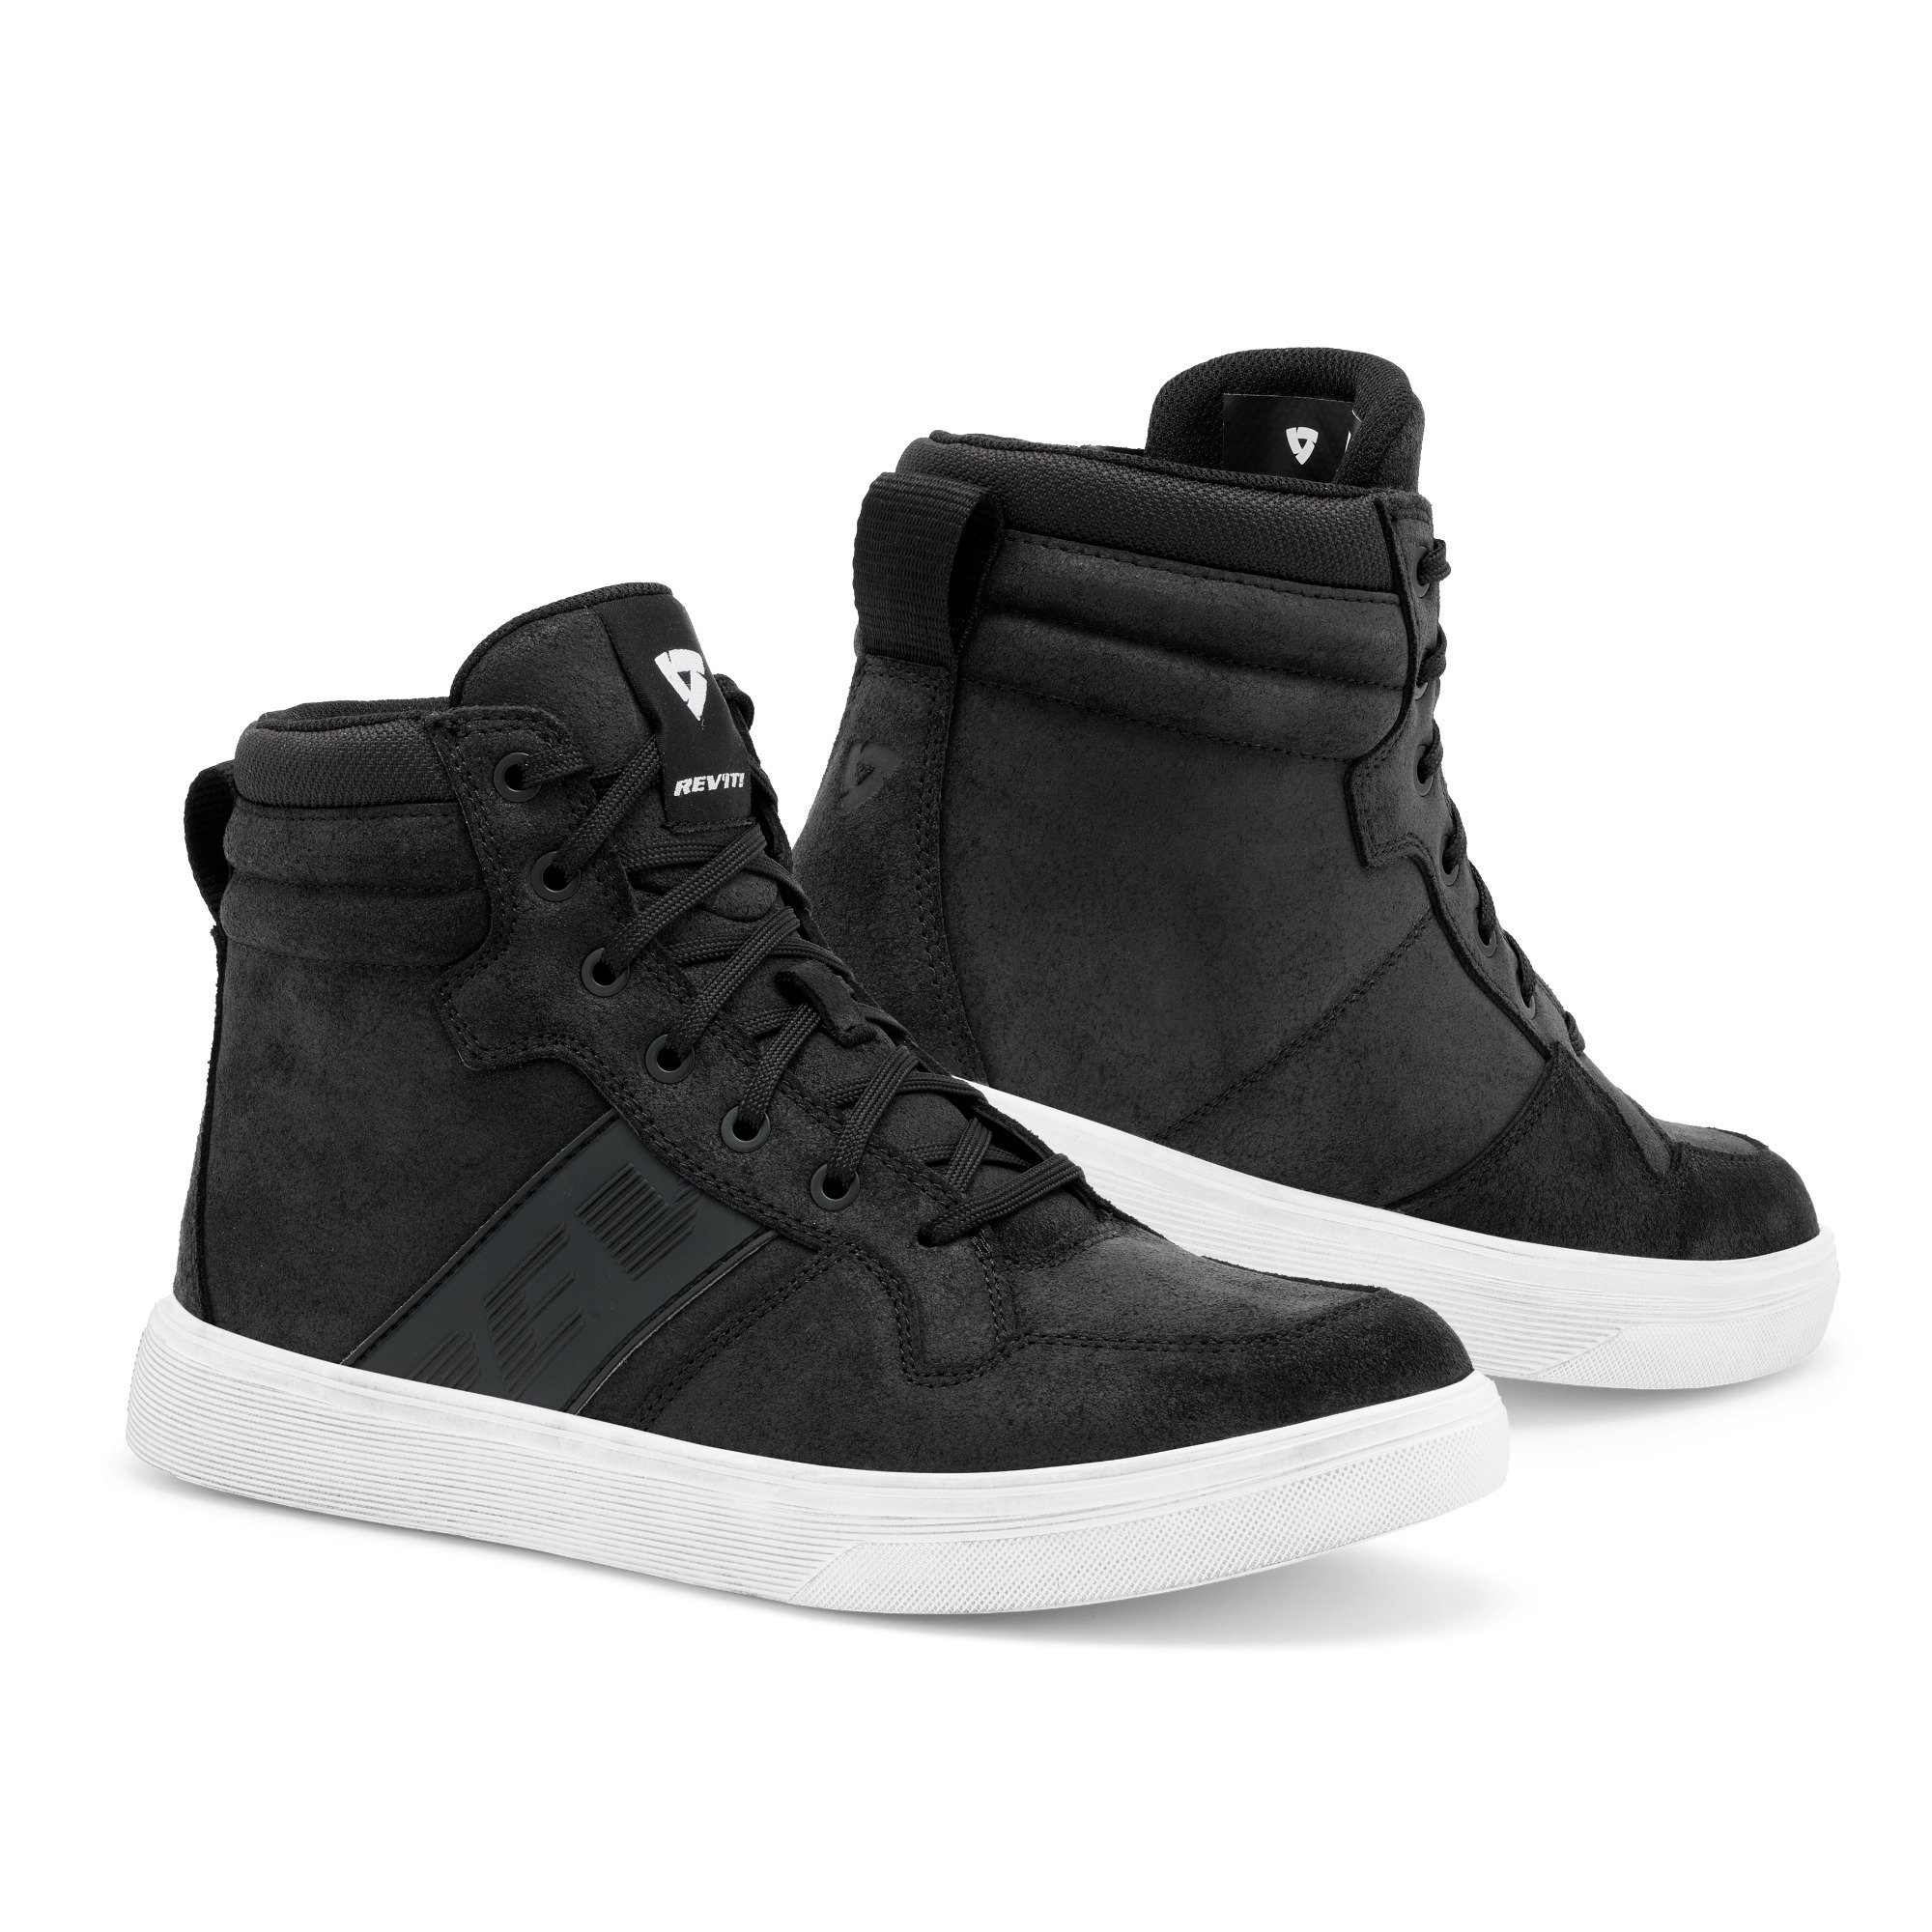 Image of REV'IT! Kick Shoes Black White Size 45 ID 8700001357531